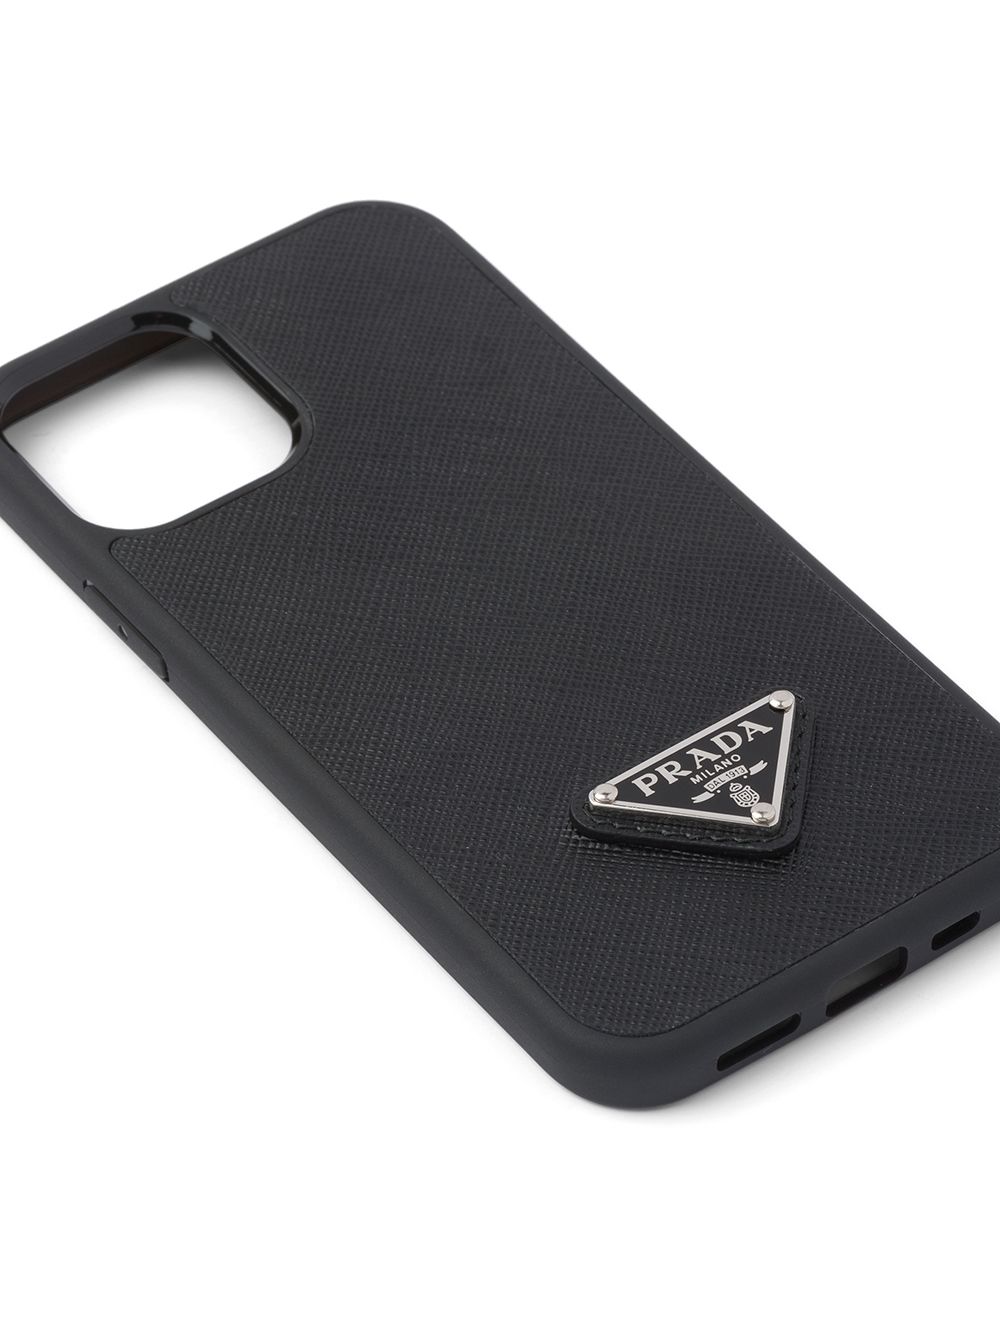 Prada Black Leather Iphone Xs Max Phone Case Prada